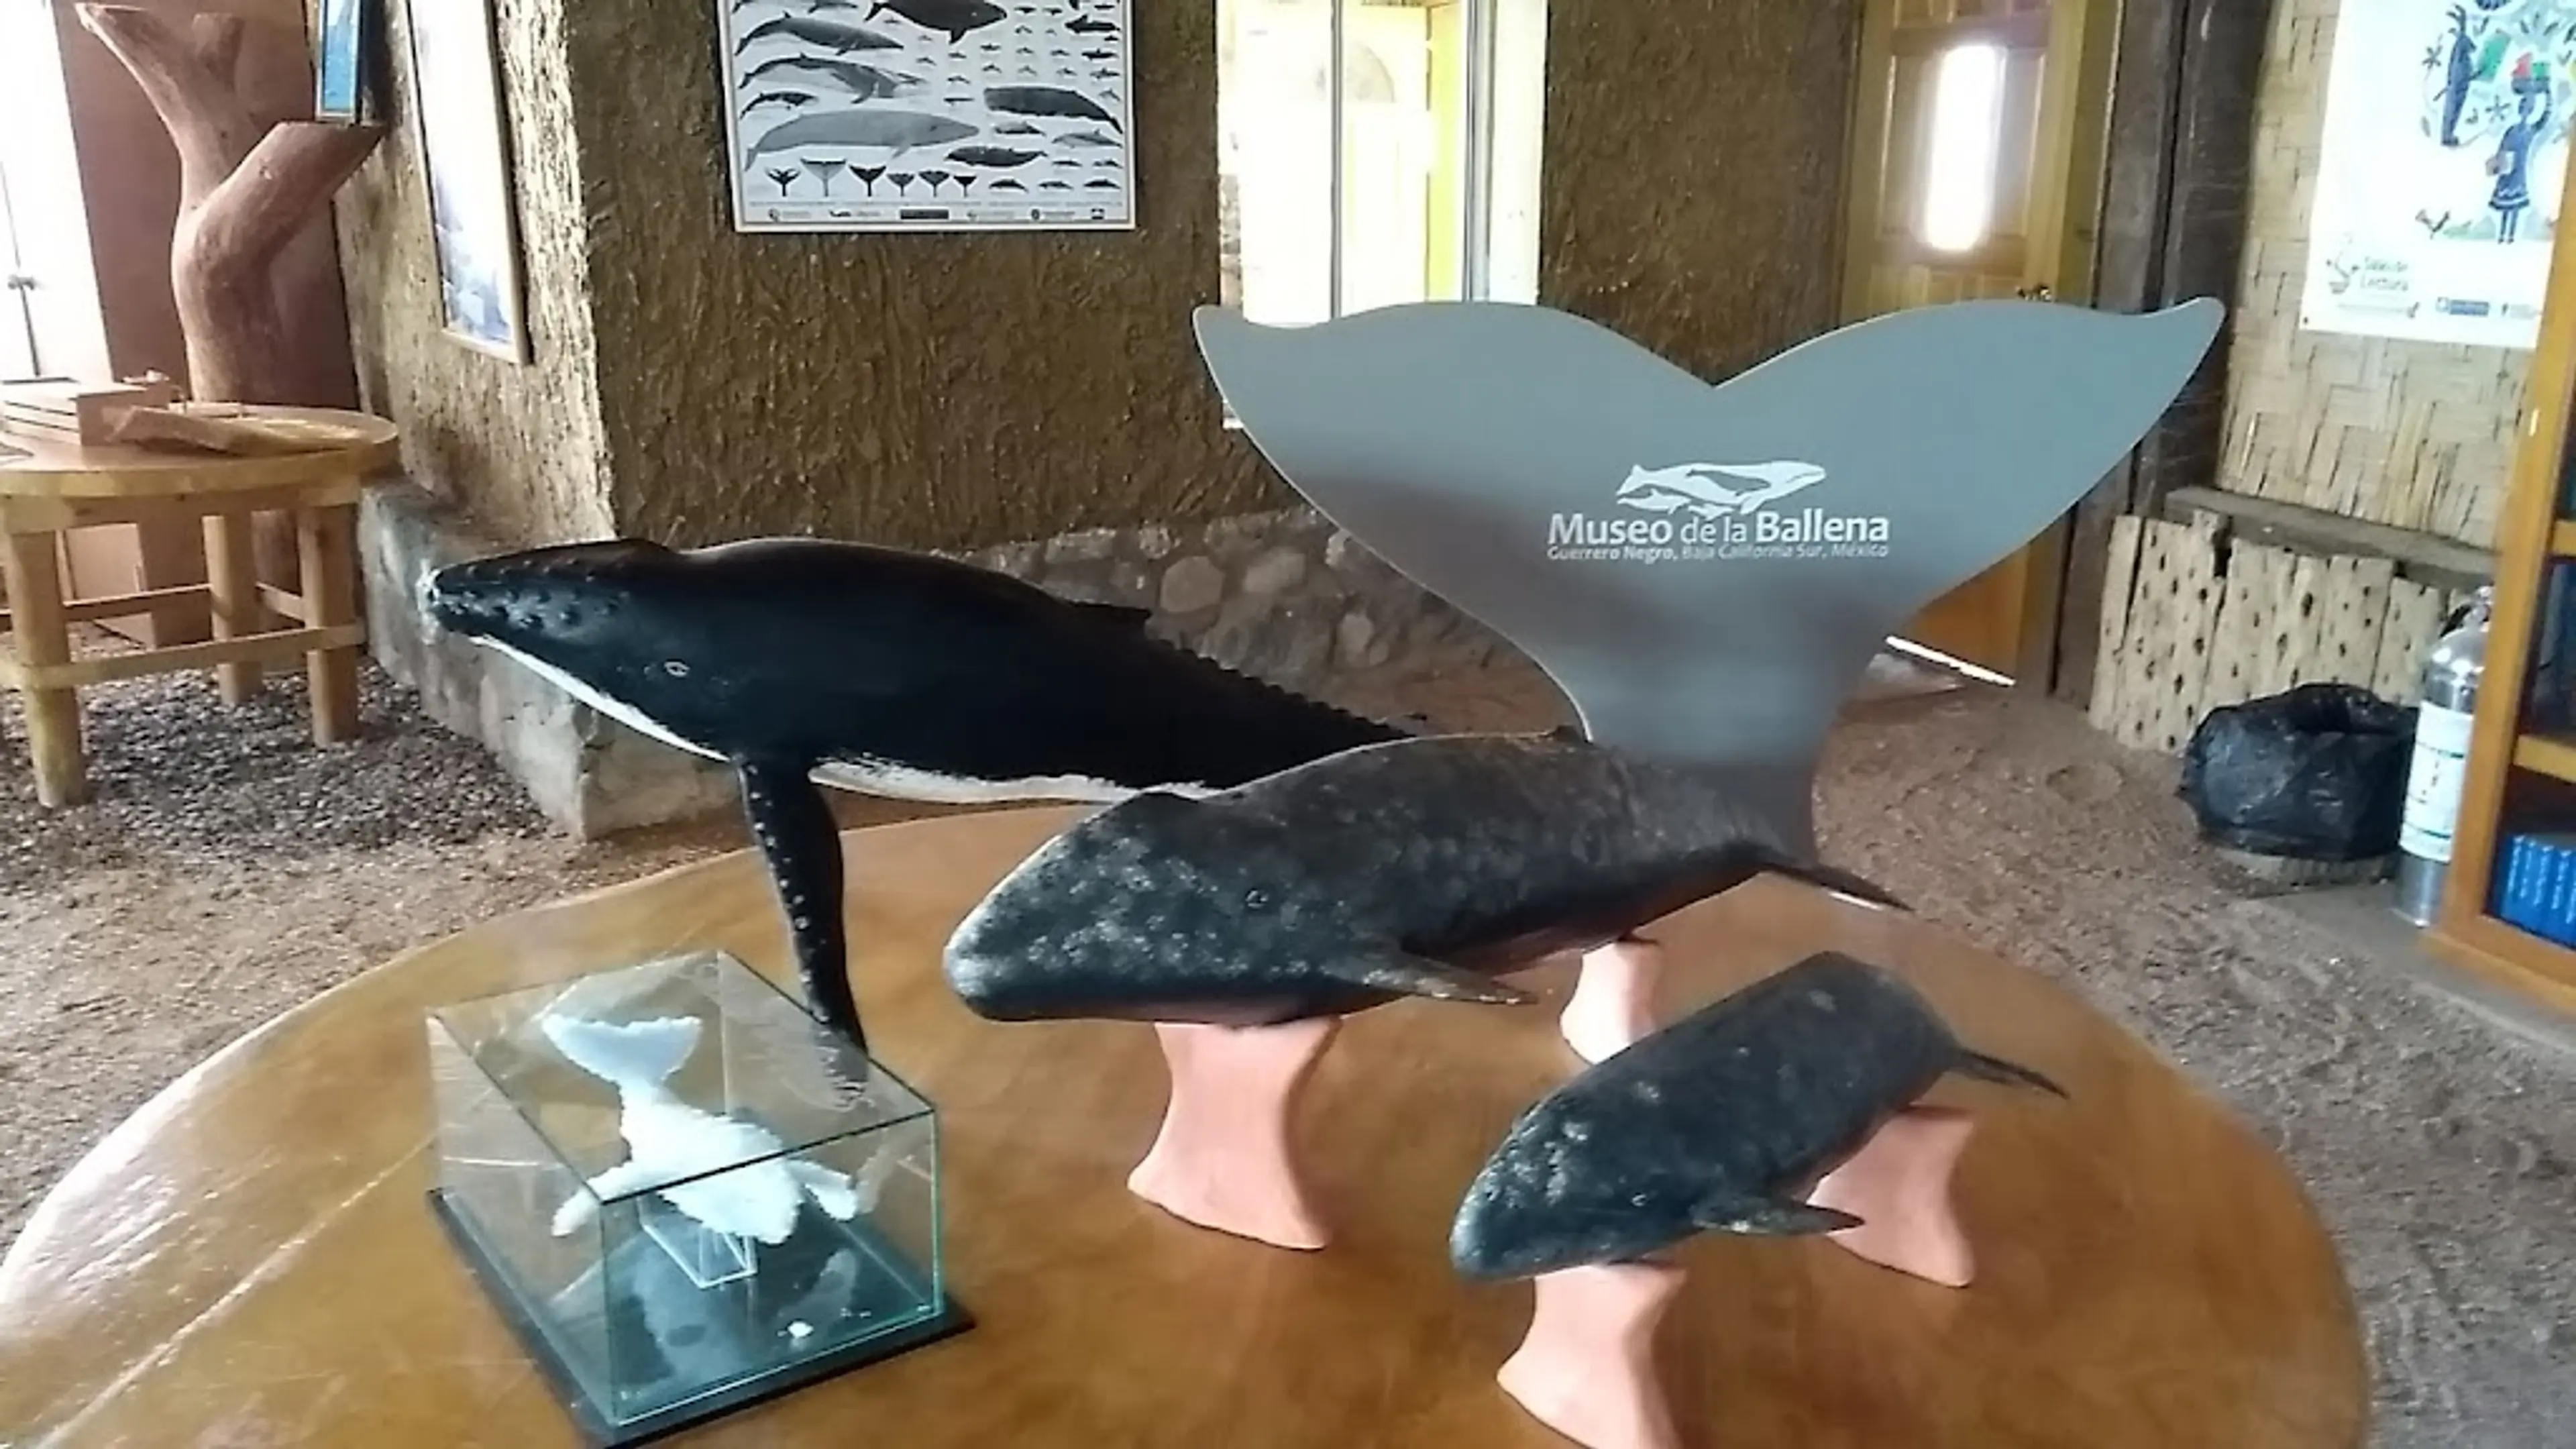 Whale Museum (Museo de la Ballena)